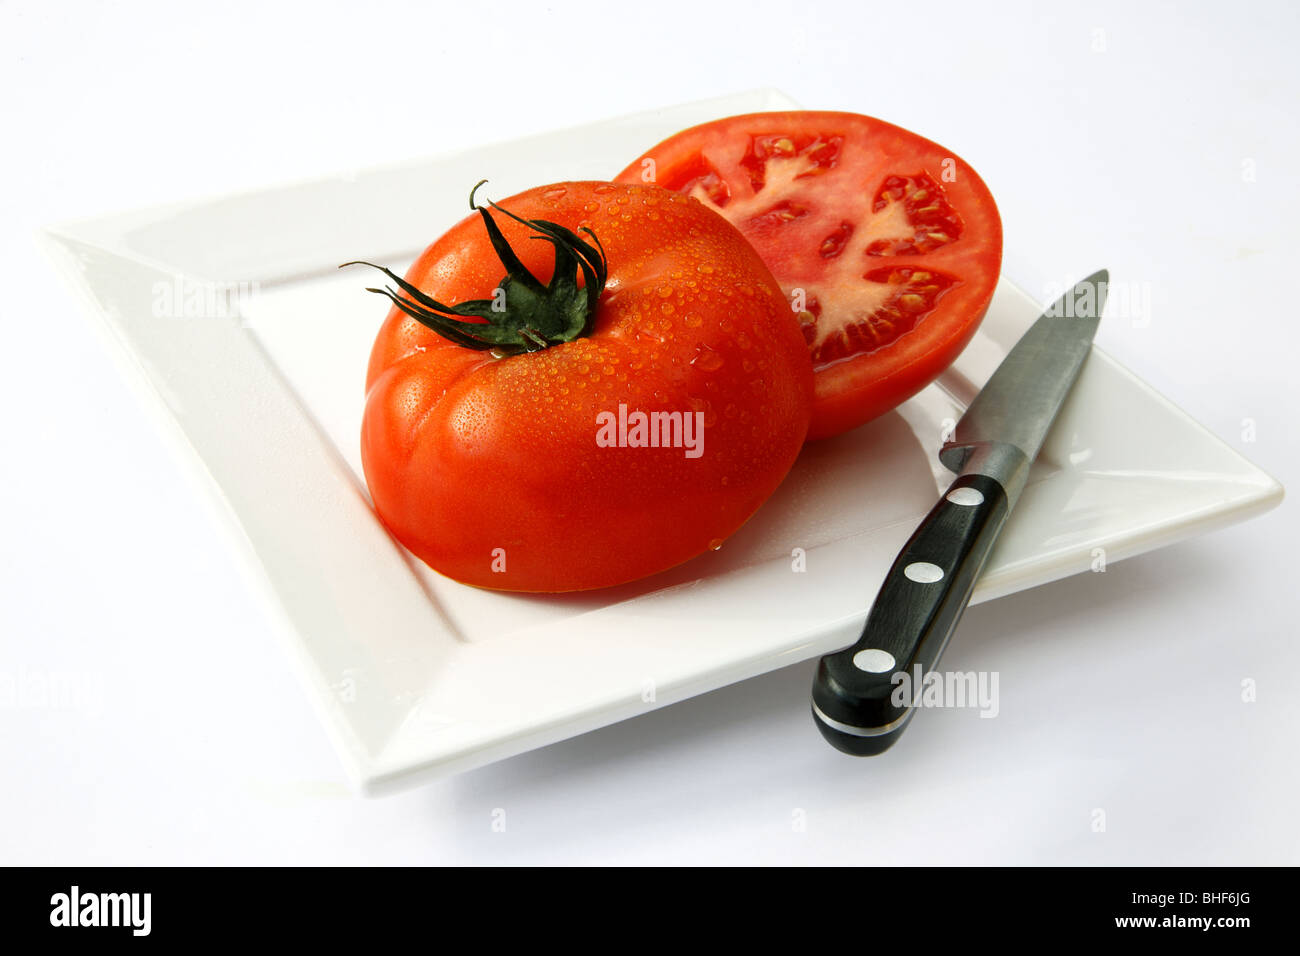 Grandi e fresche, rosso, mature, succosa carne di manzo pomodoro tagliato in due metà sul quadrato piatto bianco con coltello da cucina, sfondo bianco. Foto Stock